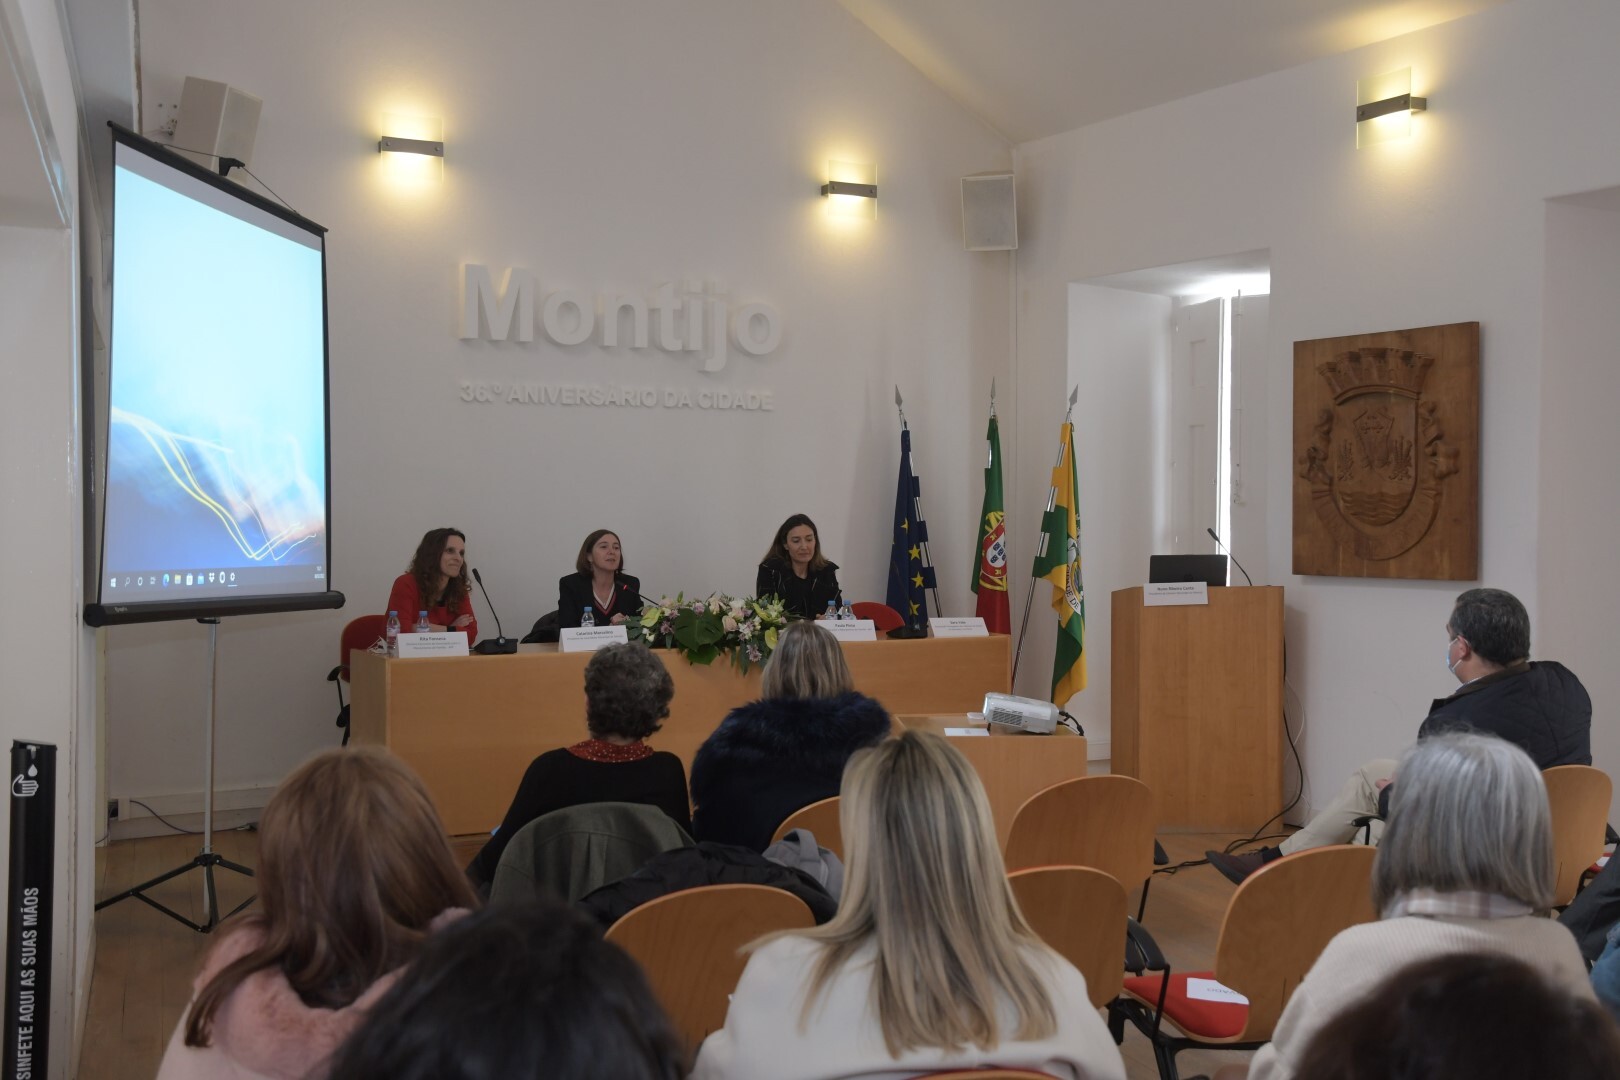 Mulheres, Saúde e Igualdade em debate no Montijo